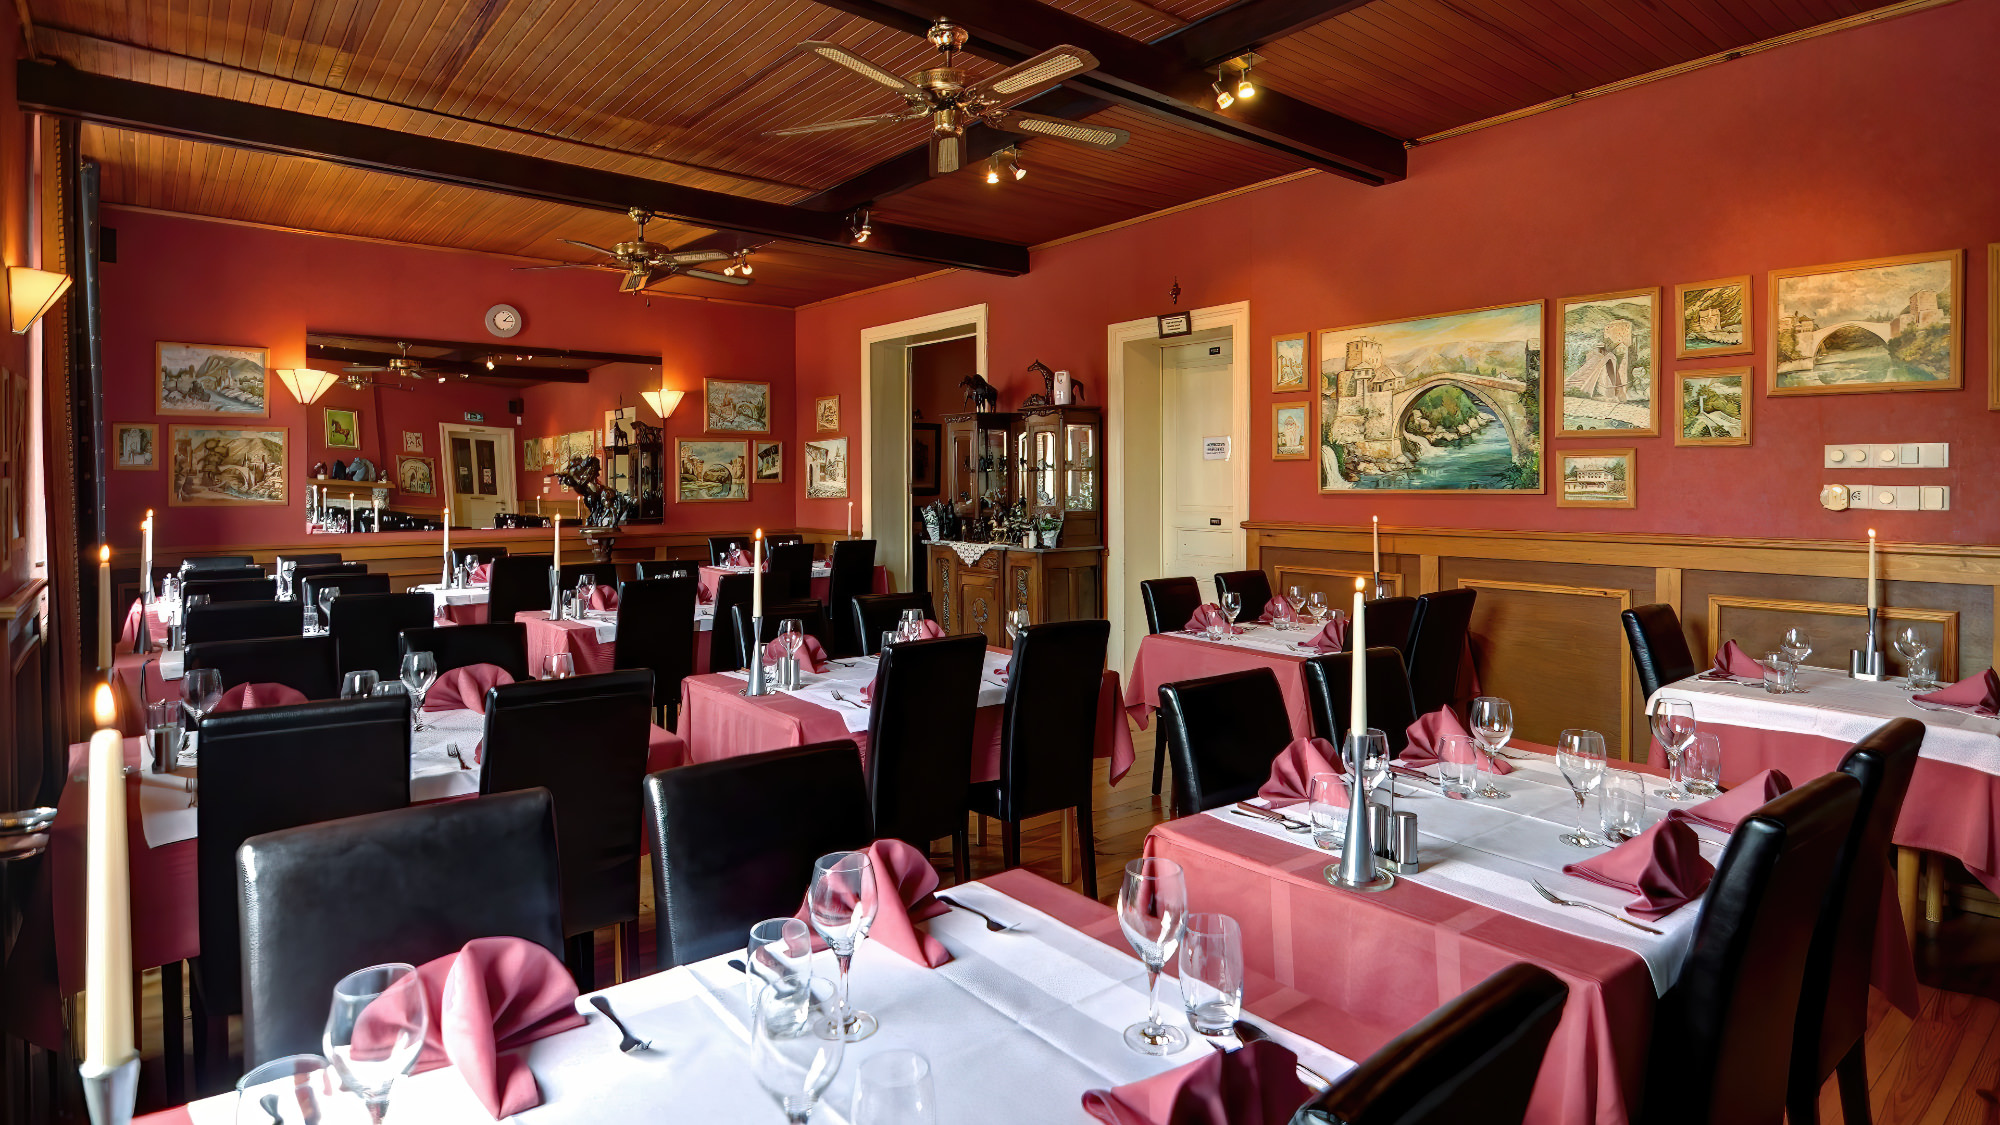 Impressie van het restaurant van Mostar met keurig ingedekte tafels